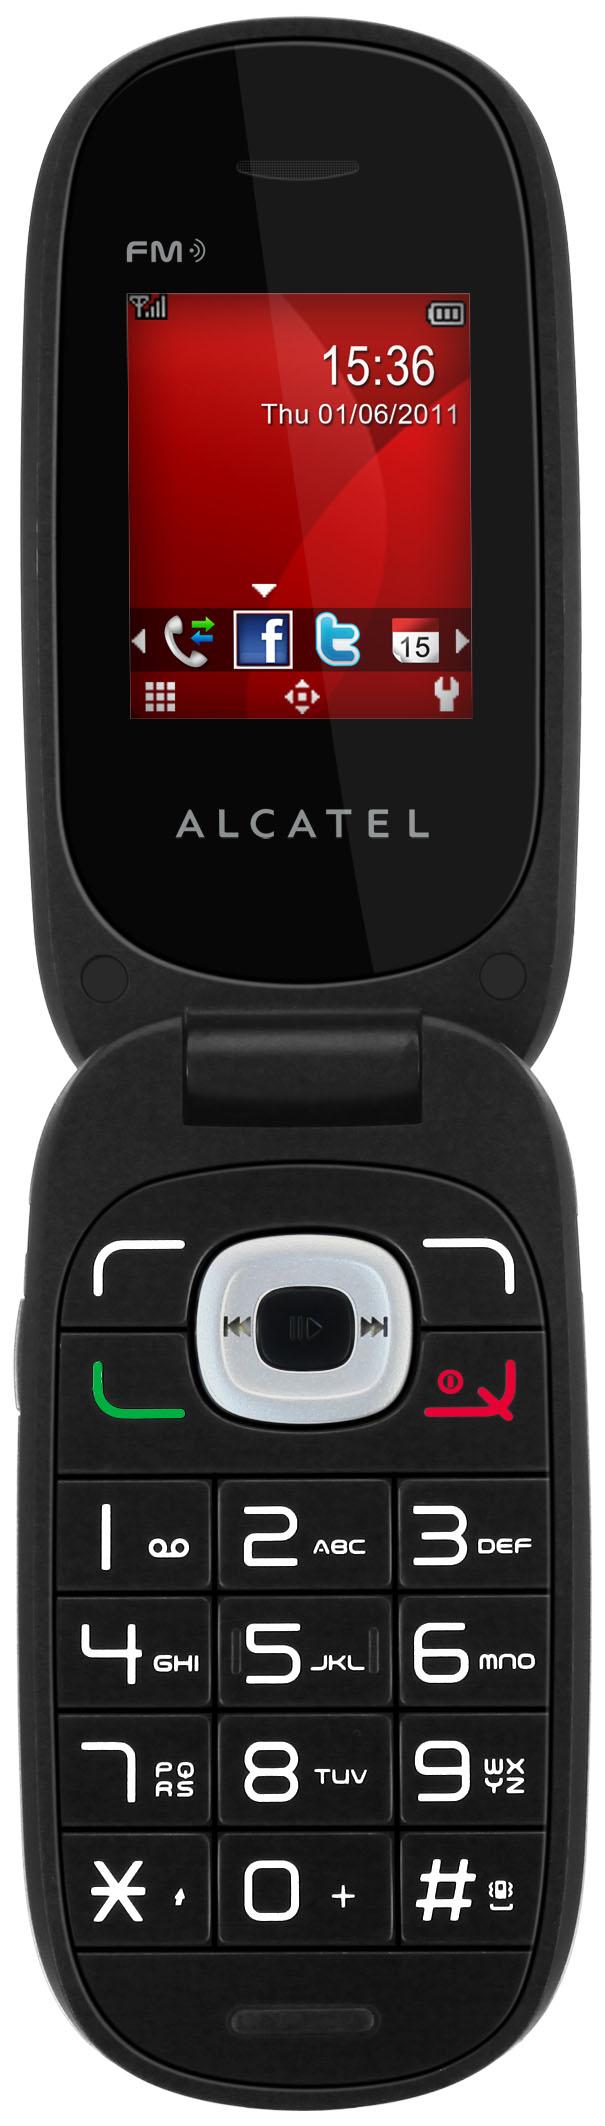 Alcatel ot665